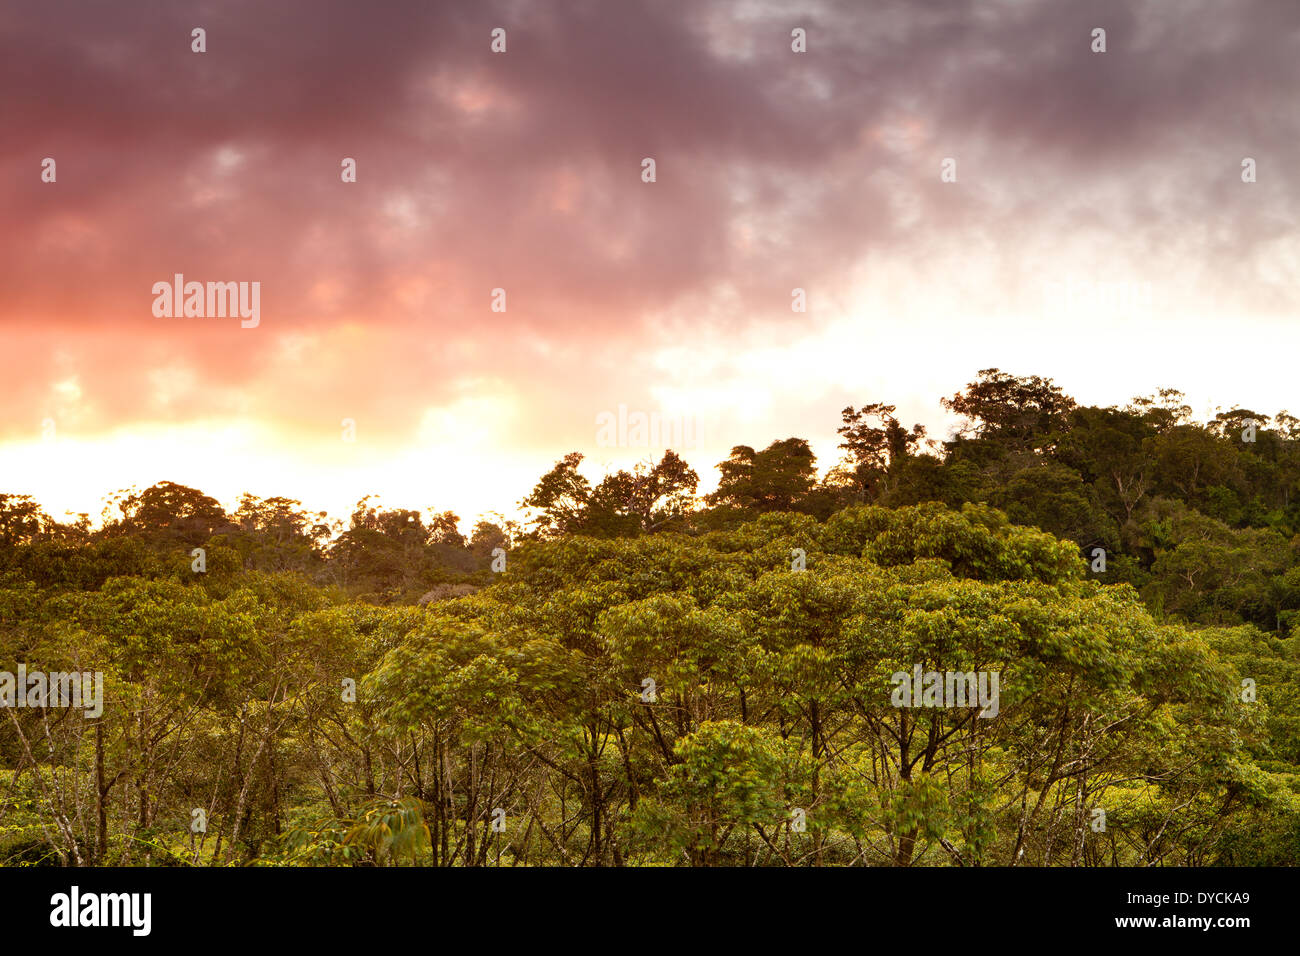 Schönen Abend licht im premontane feuchten tropischen Regenwald in Burbayar Naturschutzgebiet, Panama Provinz, Republik Panama. Stockfoto